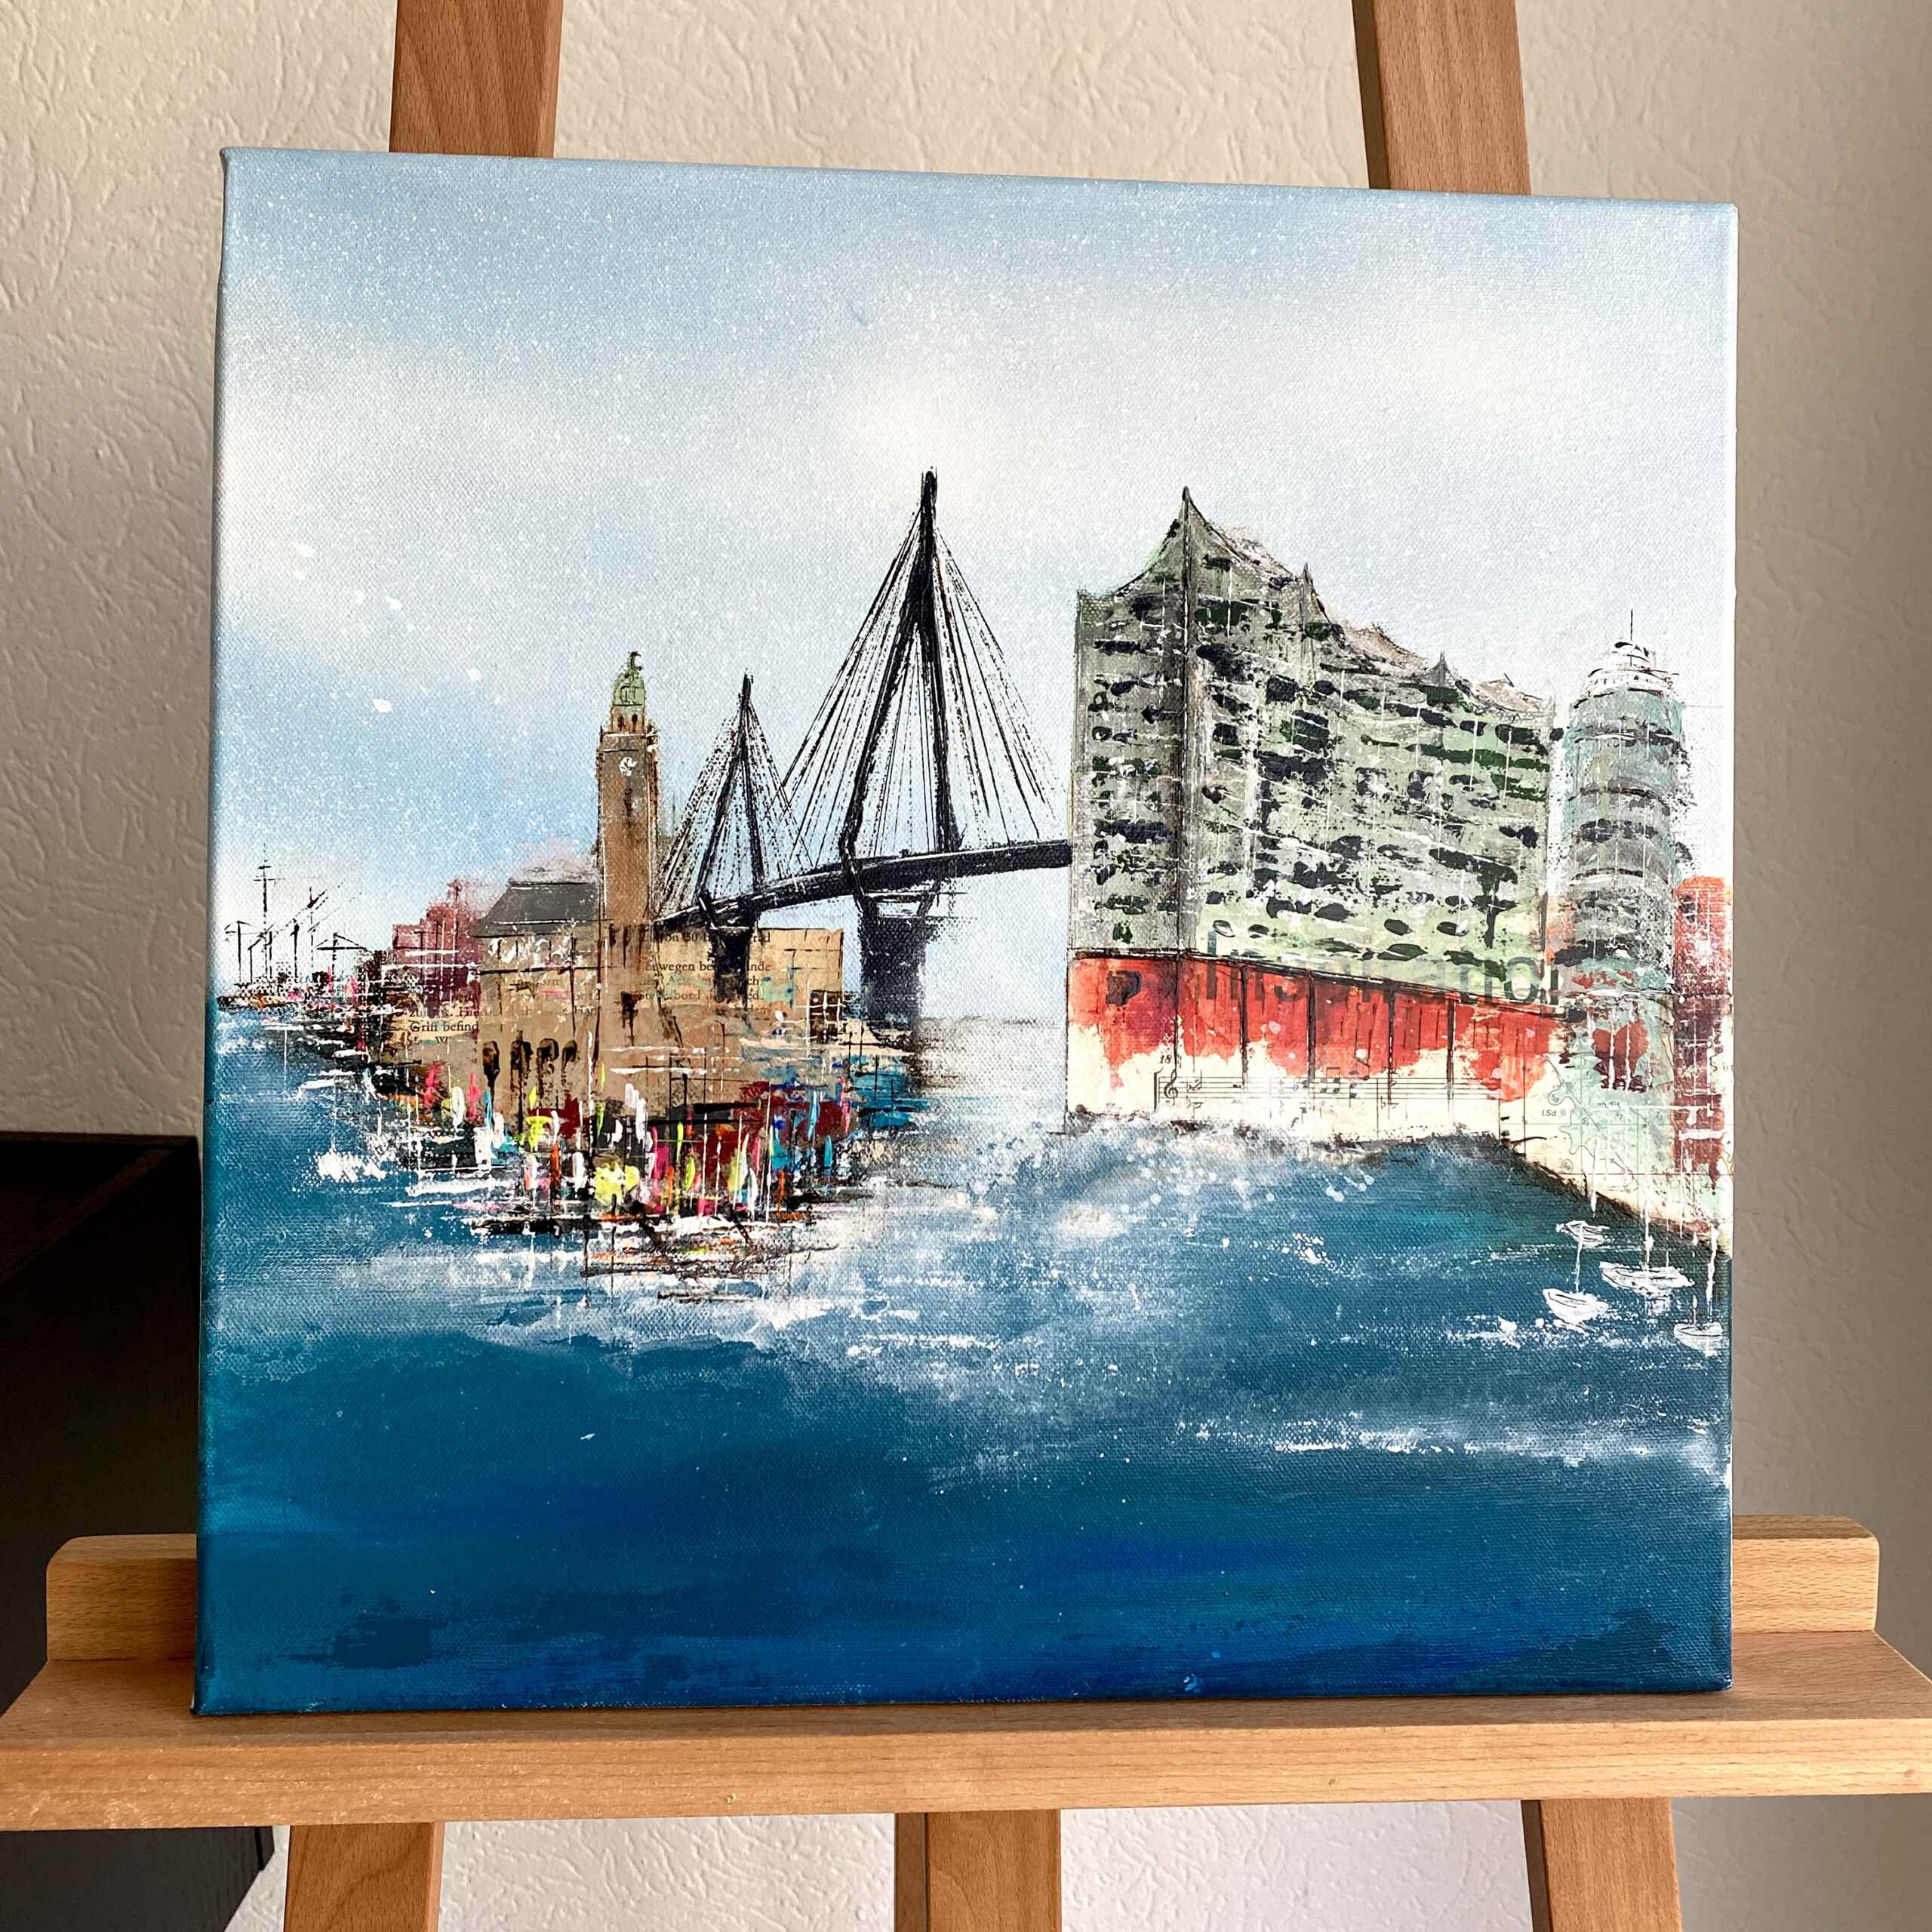 Artwork "Inspiring Hamburg No 1” by Nina Groth